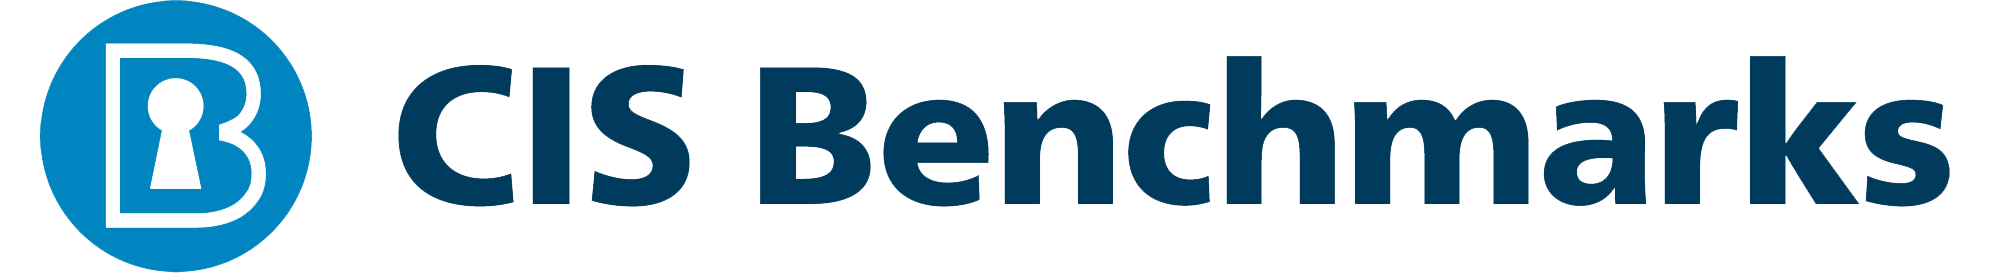 CIS Benchmark logo